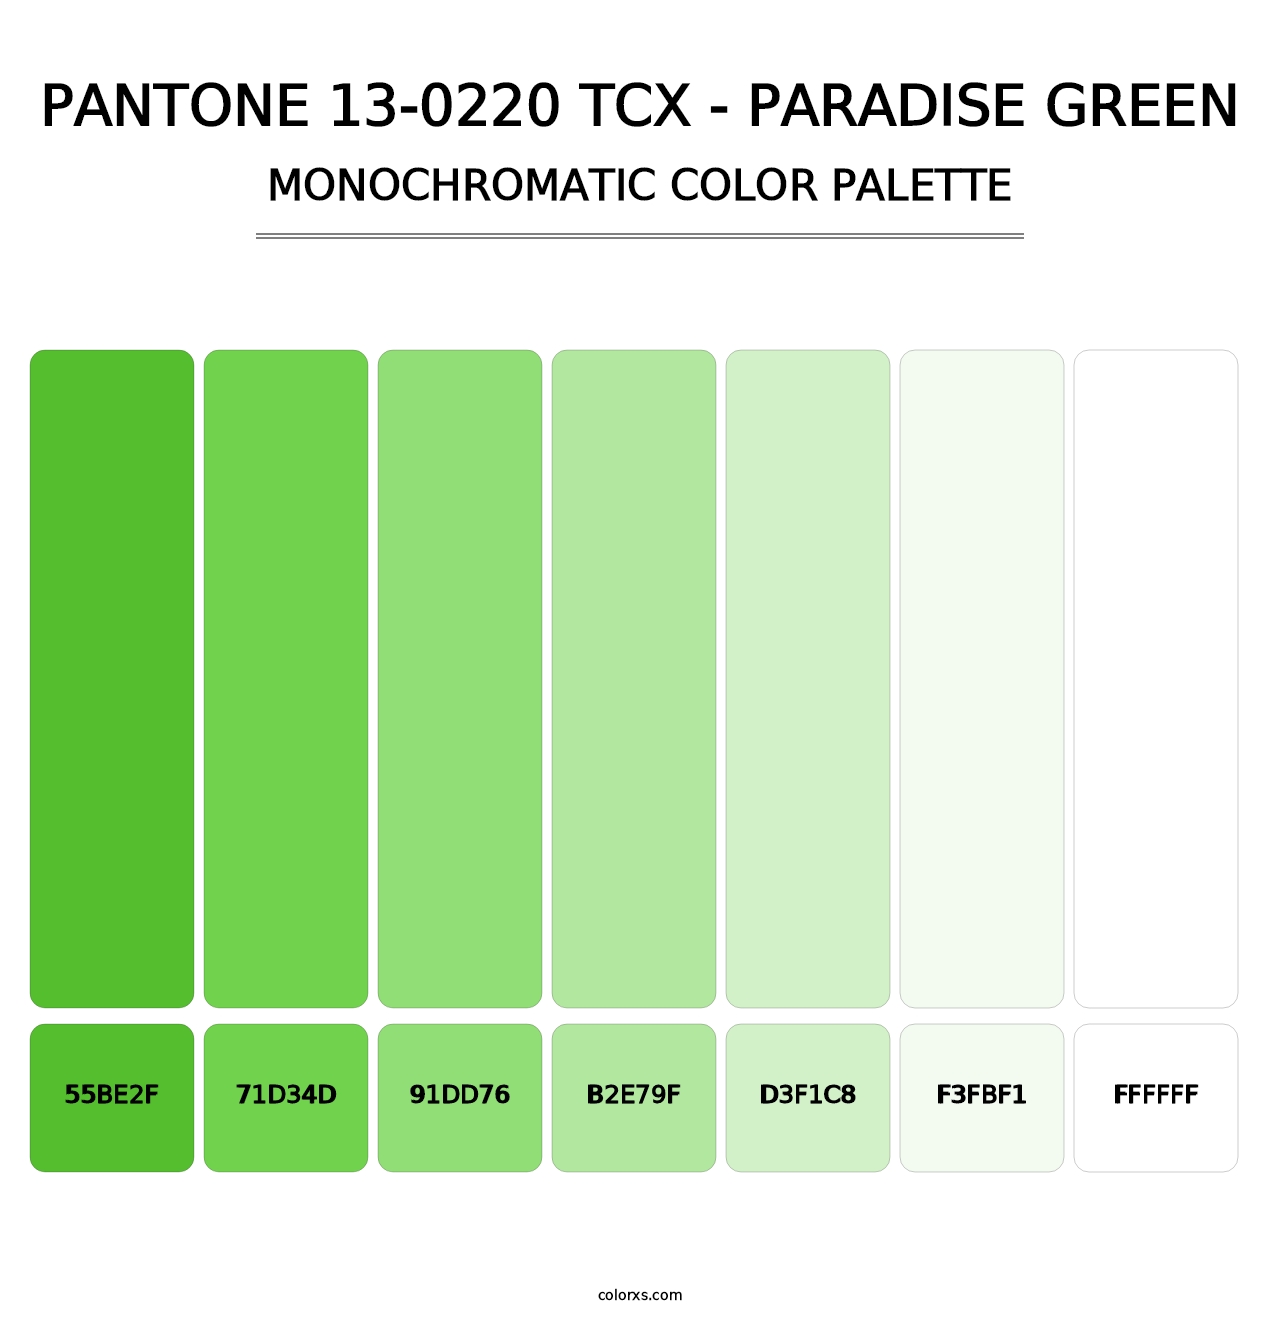 PANTONE 13-0220 TCX - Paradise Green - Monochromatic Color Palette